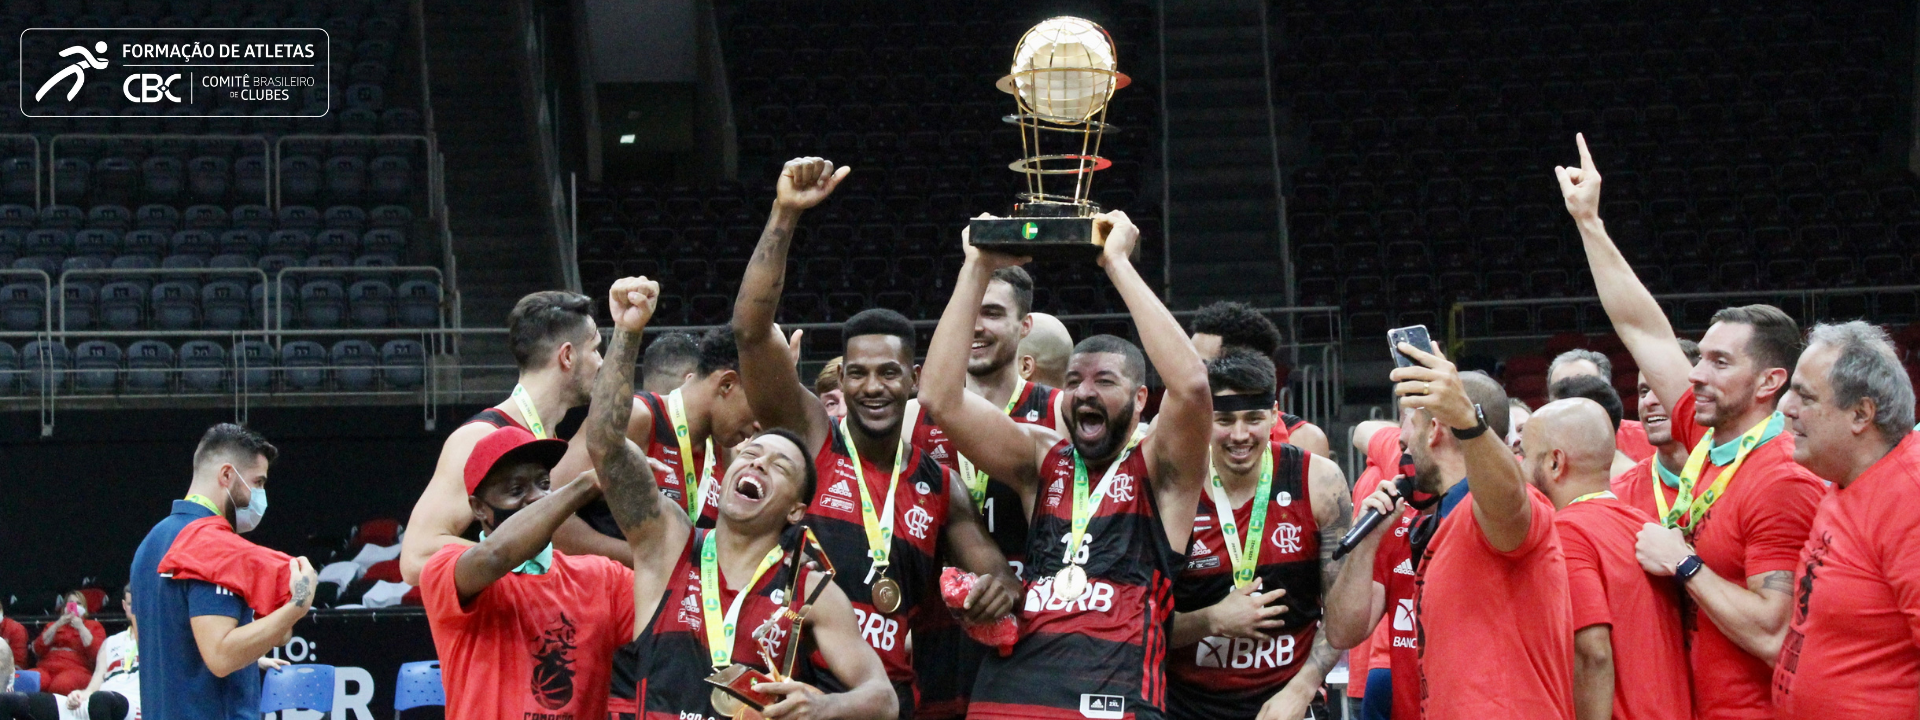 Flamengo Basquete é campeão da temporada 2020/2021 do Novo Basquete Brasil (NBB)